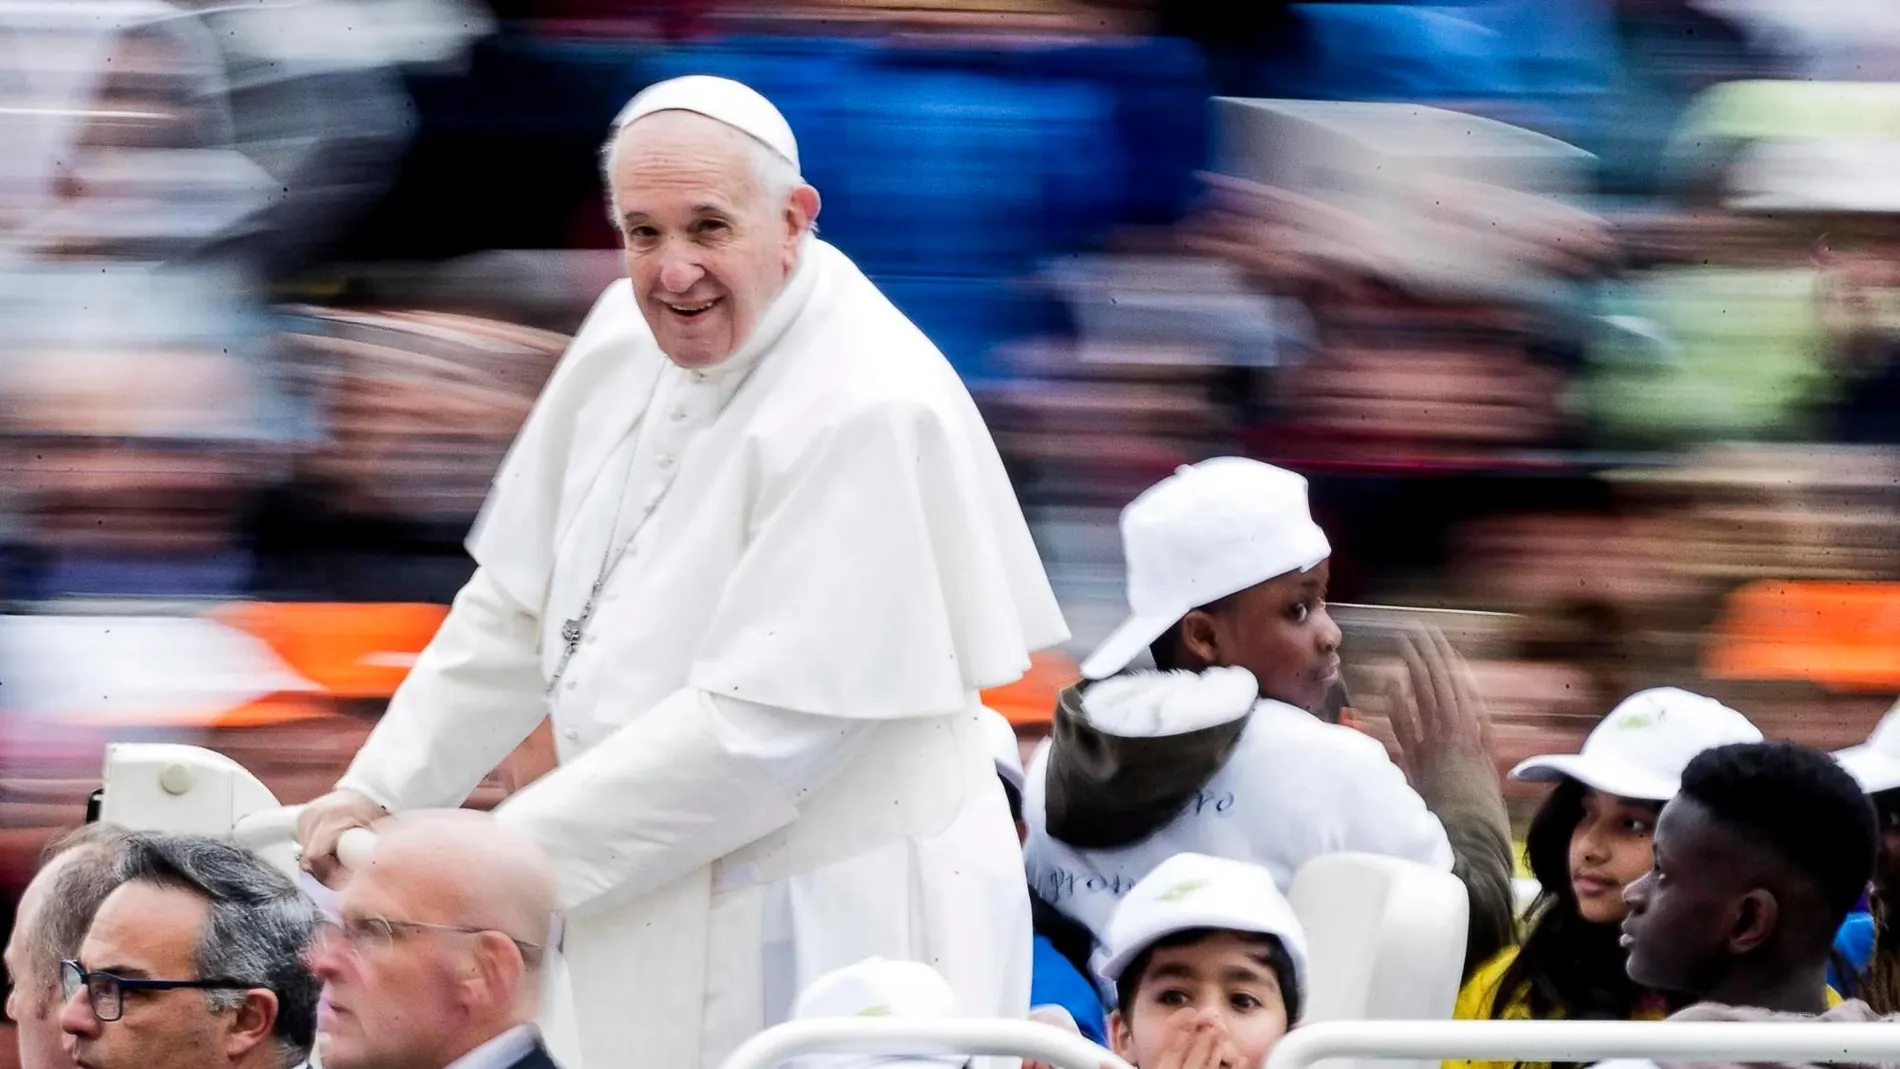 El Papa lleva en su papamóvil a ocho niños refugiados durante un recorrido por la plaza de San Pedro del Vaticano, previo a su audiencia general que celebró hoy en el Vaticano